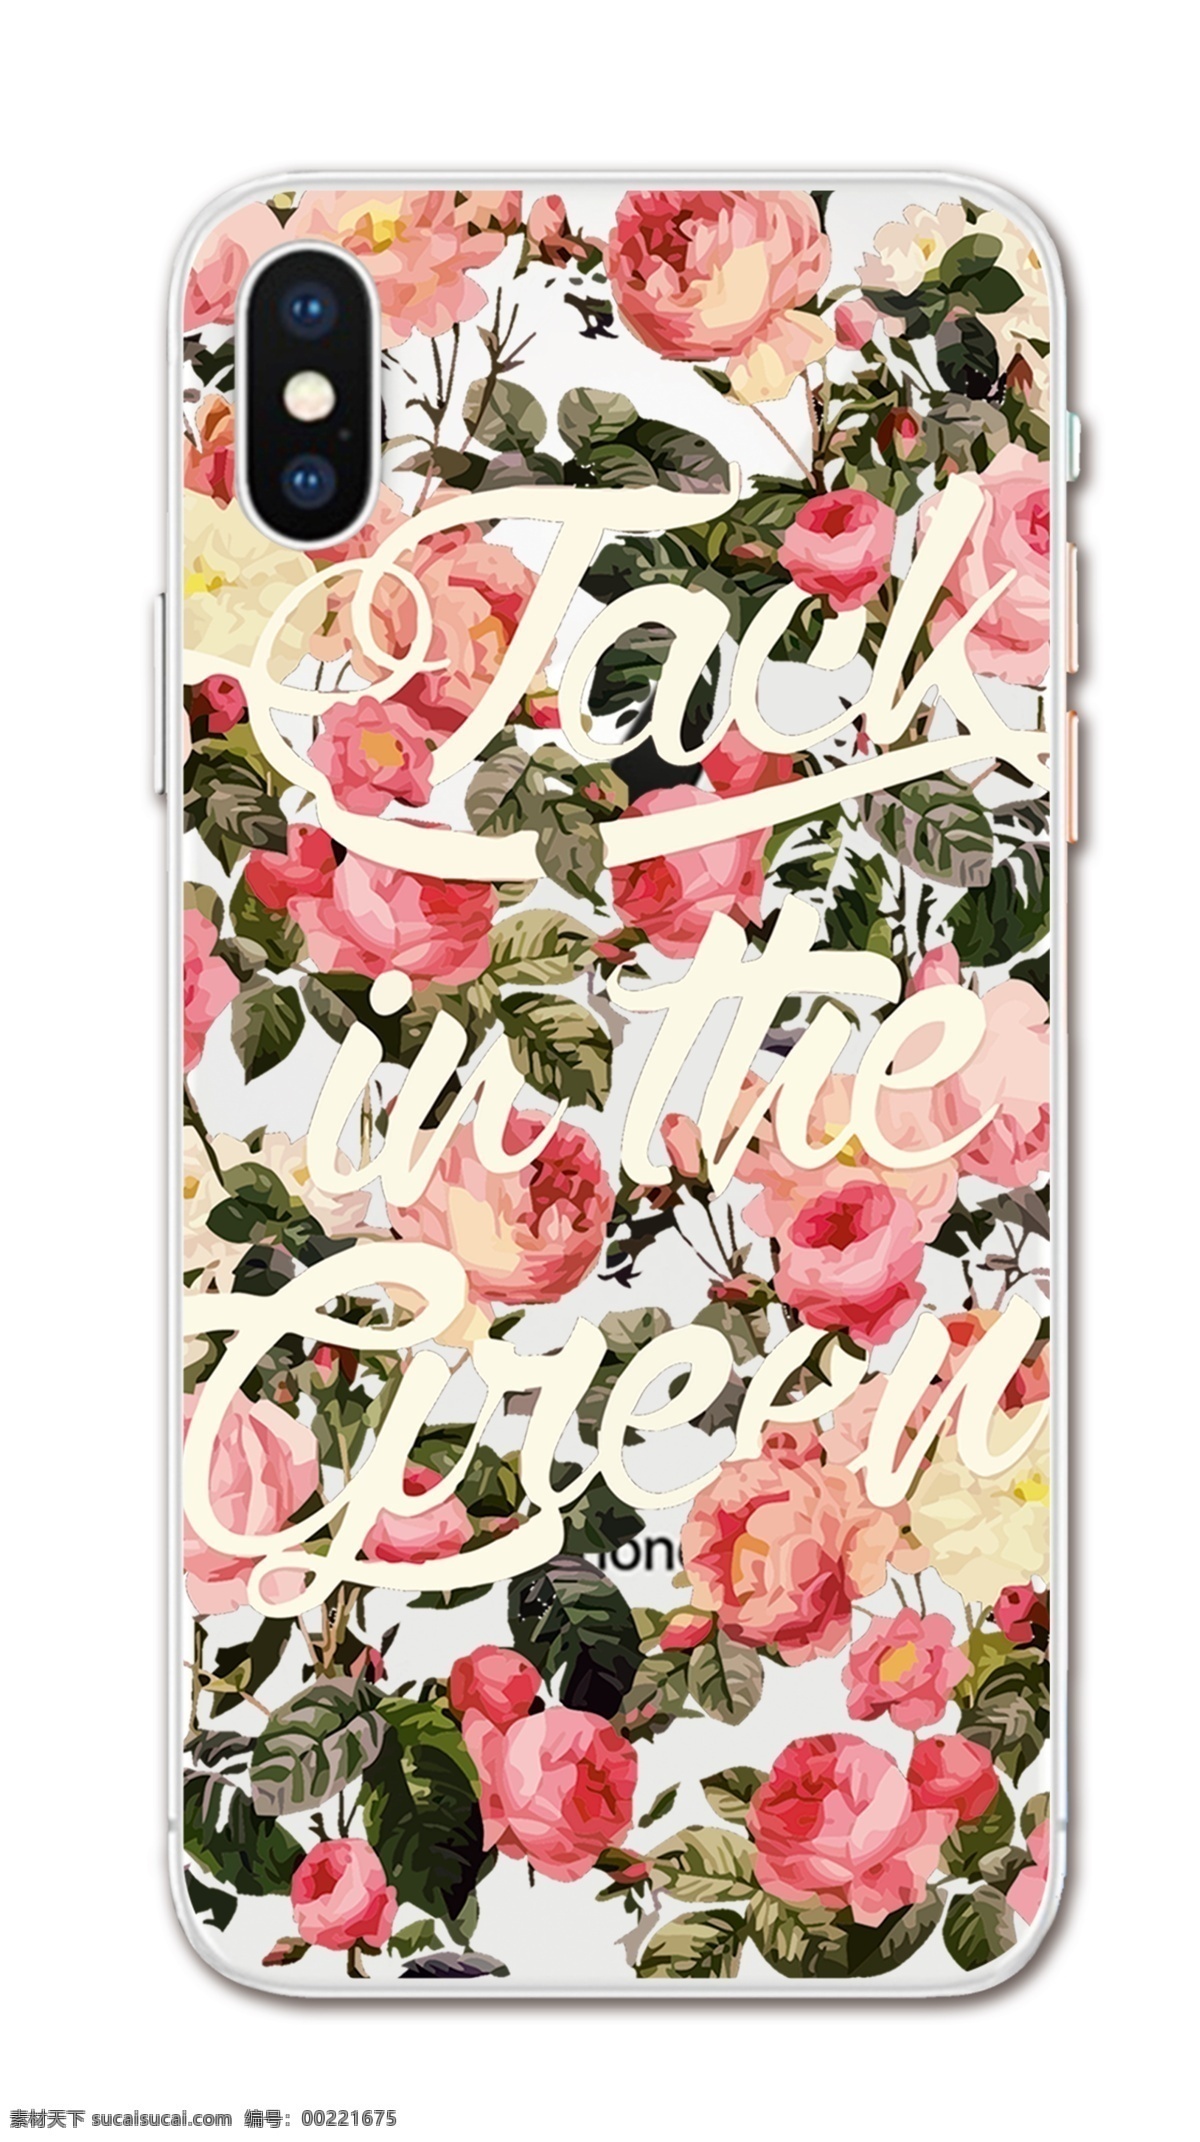 鲜花手机壳 玫瑰花 手机壳 小花 字母 镂空图案 包装设计